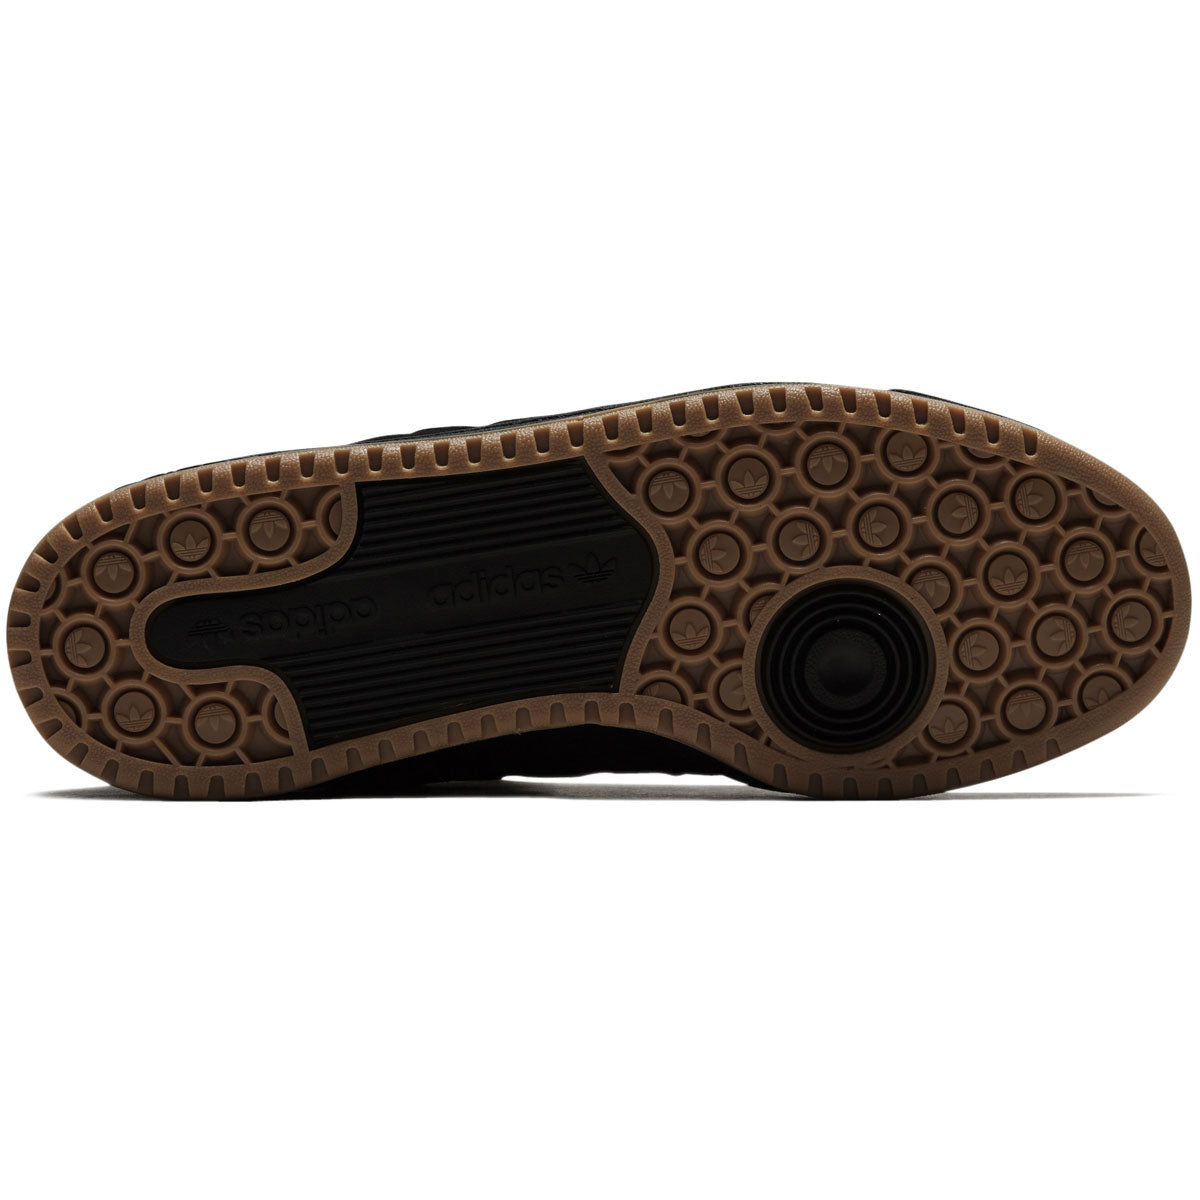 Adidas Forum 84 Low Adv Shoes - Core Black/Carbon/Grey image 4